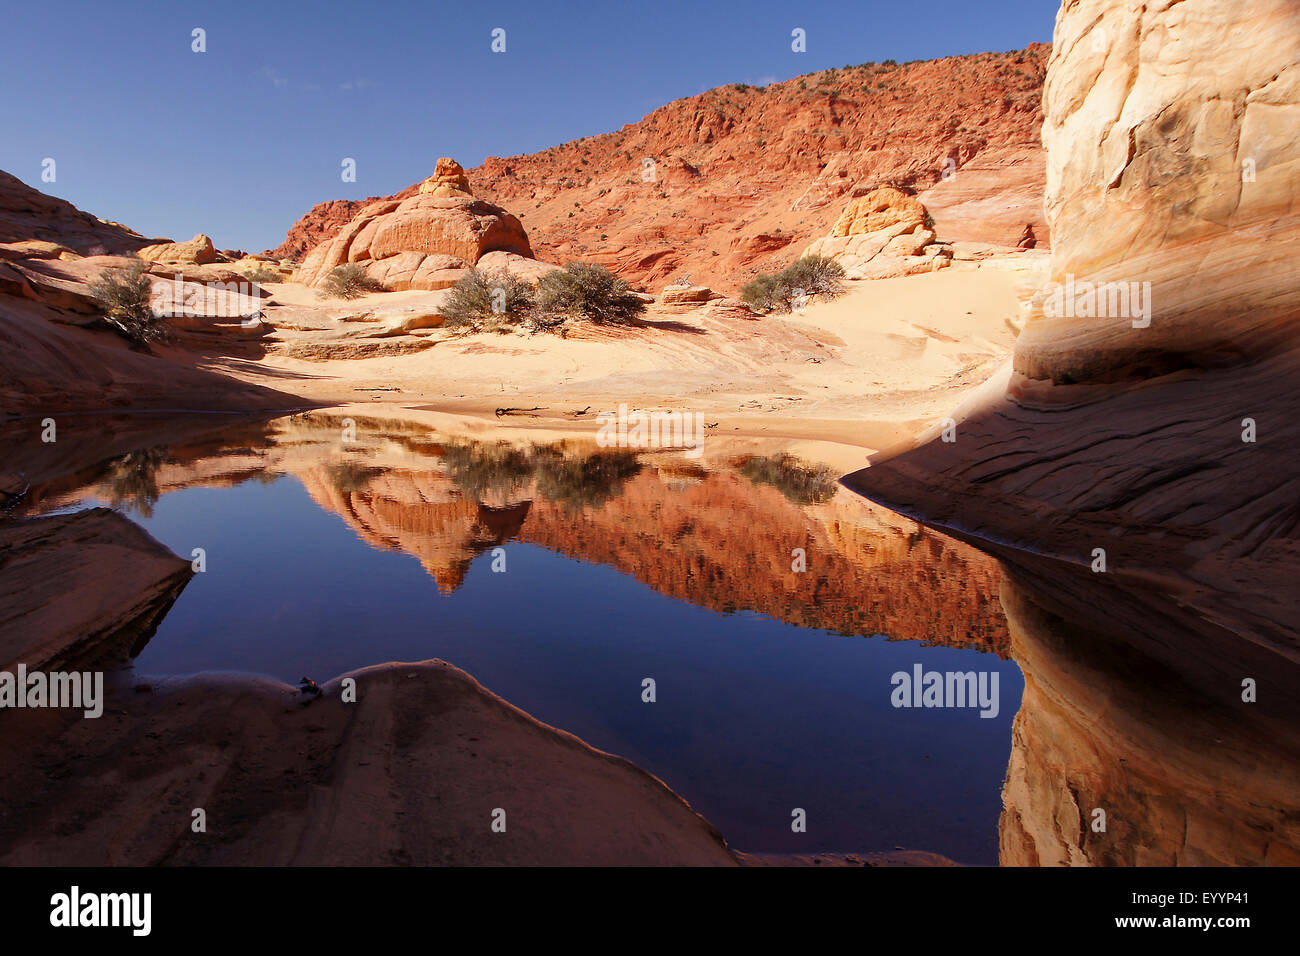 Formation rocheuse de sable en miroir dans un lac, USA, Arizona, Vermilion Cliffs National Monument Banque D'Images